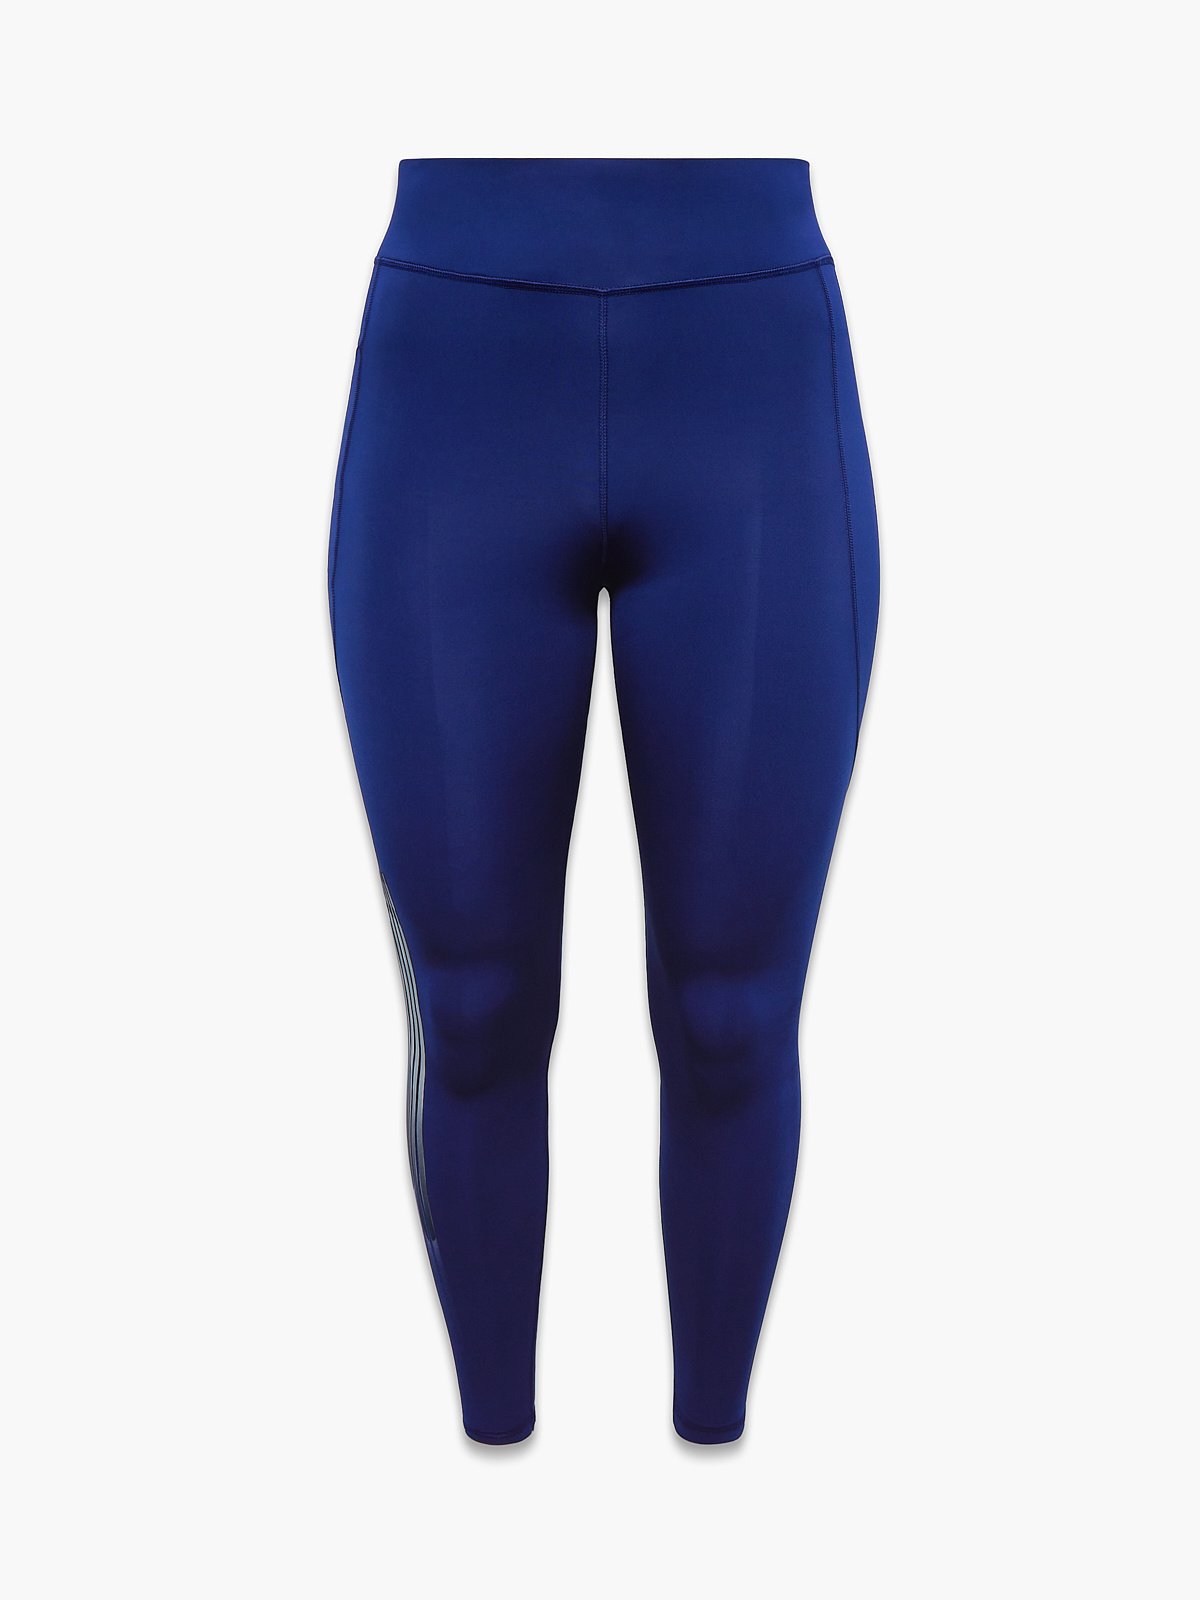 HMGYH satina high waisted leggings for women Solid Split Hem Pants (Color :  Navy Blue, Size : L)